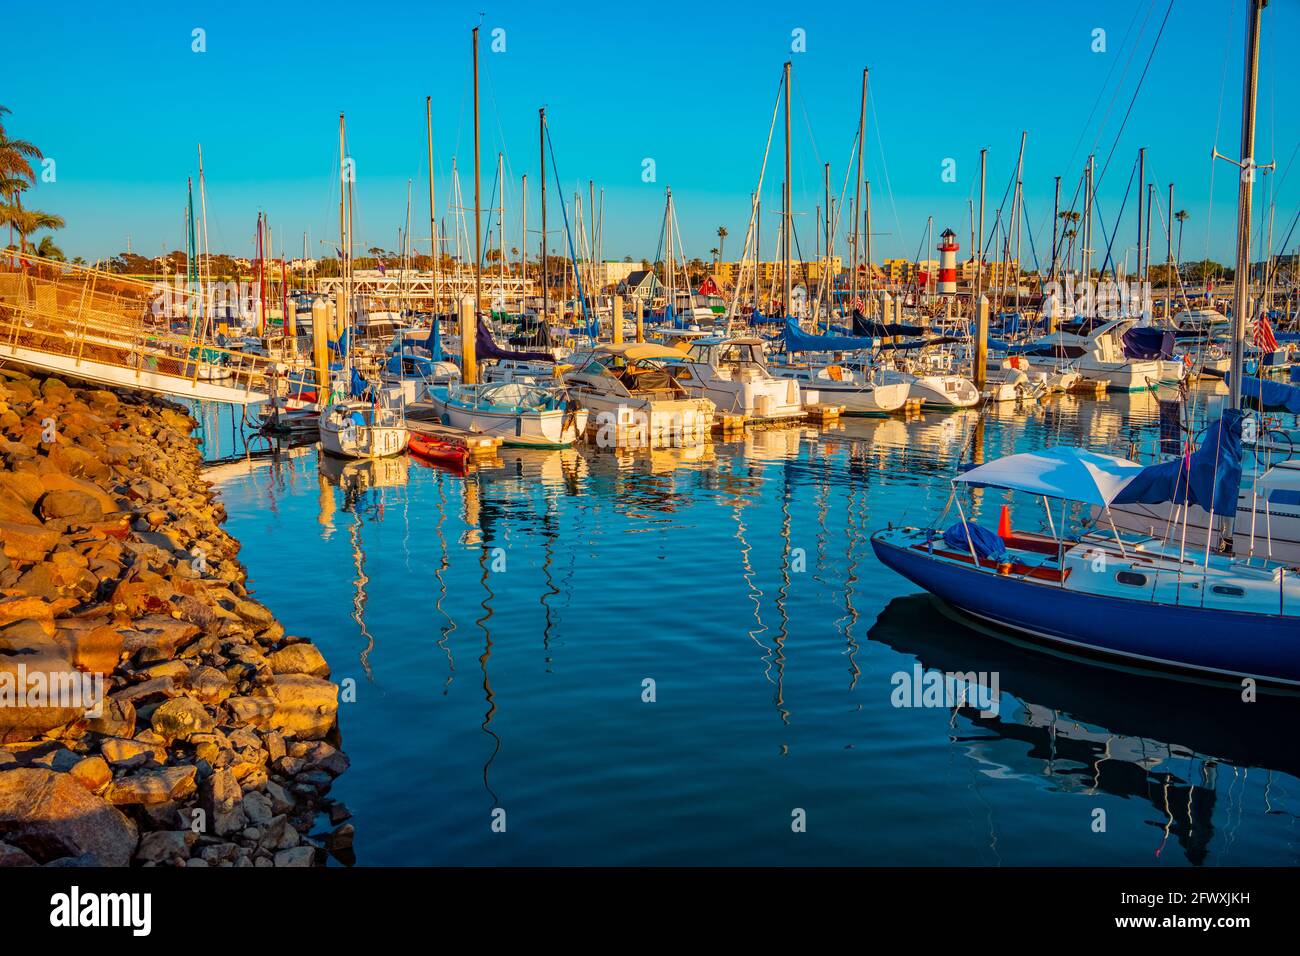 Oceanside Harbor ist ein öffentlicher Hafen mit Fischerbooten und Leuchtturm. Es ist von kleinen Geschäften umgeben und liegt neben Carlsbad, Kalifornien. Stockfoto